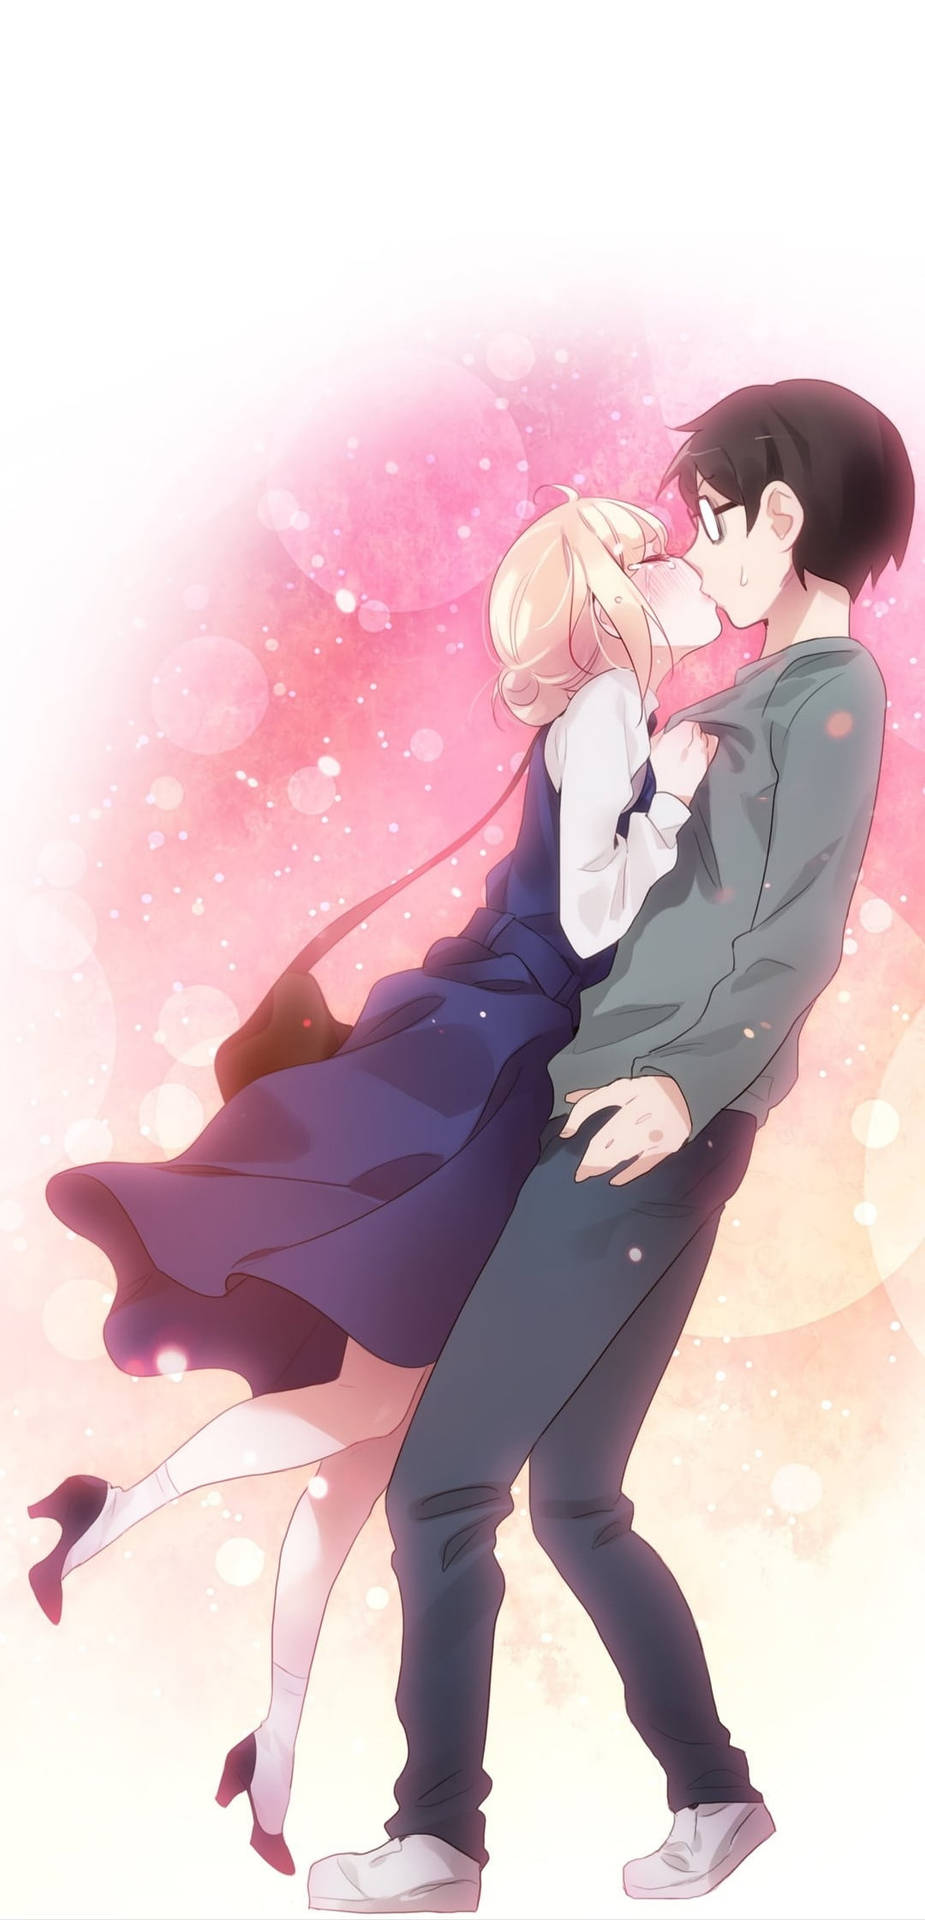 Kosei And Kaori Anime Couple Kiss Wallpaper